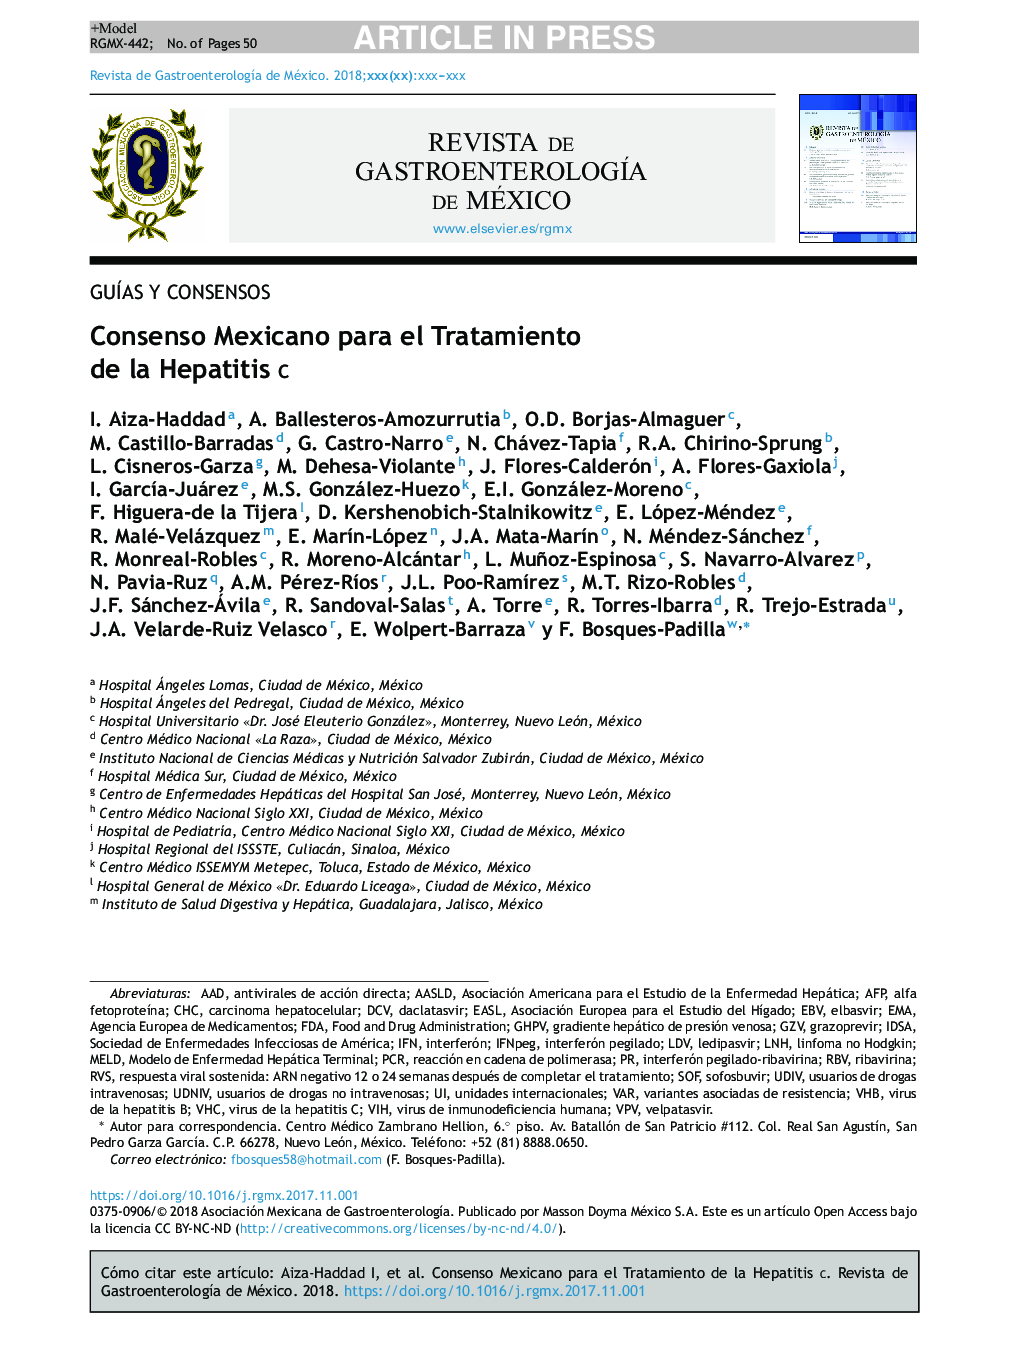 Consenso Mexicano para el Tratamiento de la Hepatitis C